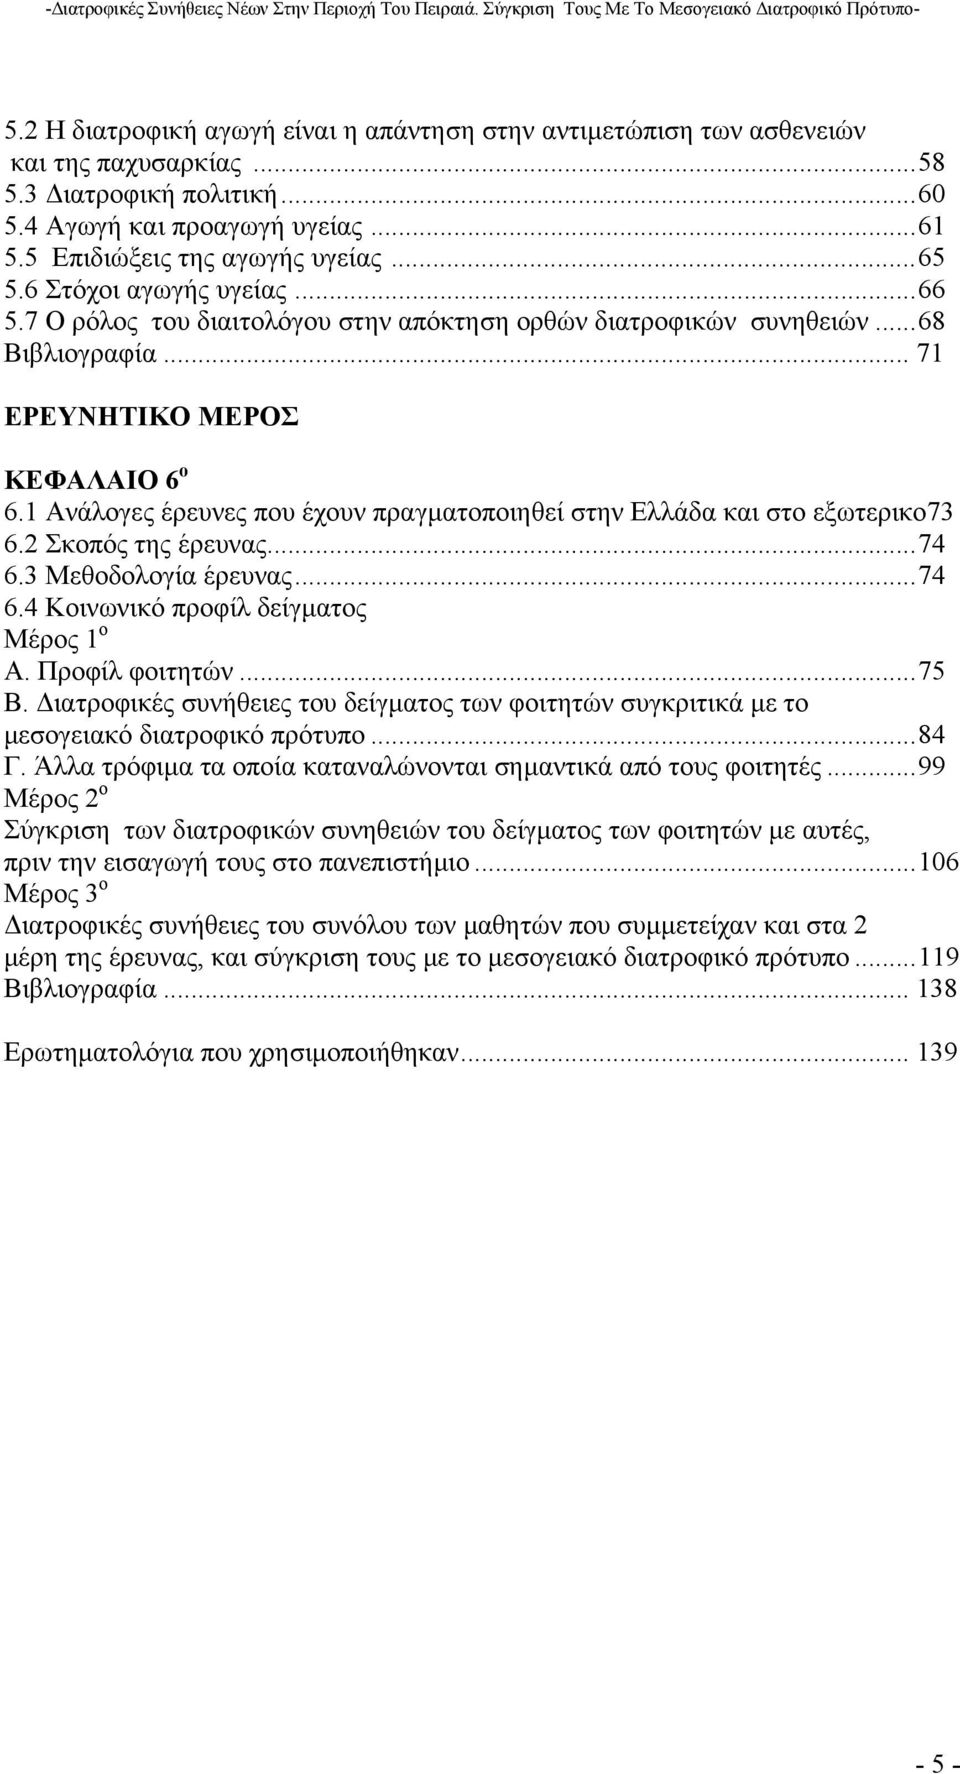 1 Ανάλογες έρευνες που έχουν πραγµατοποιηθεί στην Ελλάδα και στο εξωτερικο73 6.2 Σκοπός της έρευνας...74 6.3 Μεθοδολογία έρευνας...74 6.4 Κοινωνικό προφίλ δείγµατος Μέρος 1 ο Α. Προφίλ φοιτητών...75 Β.